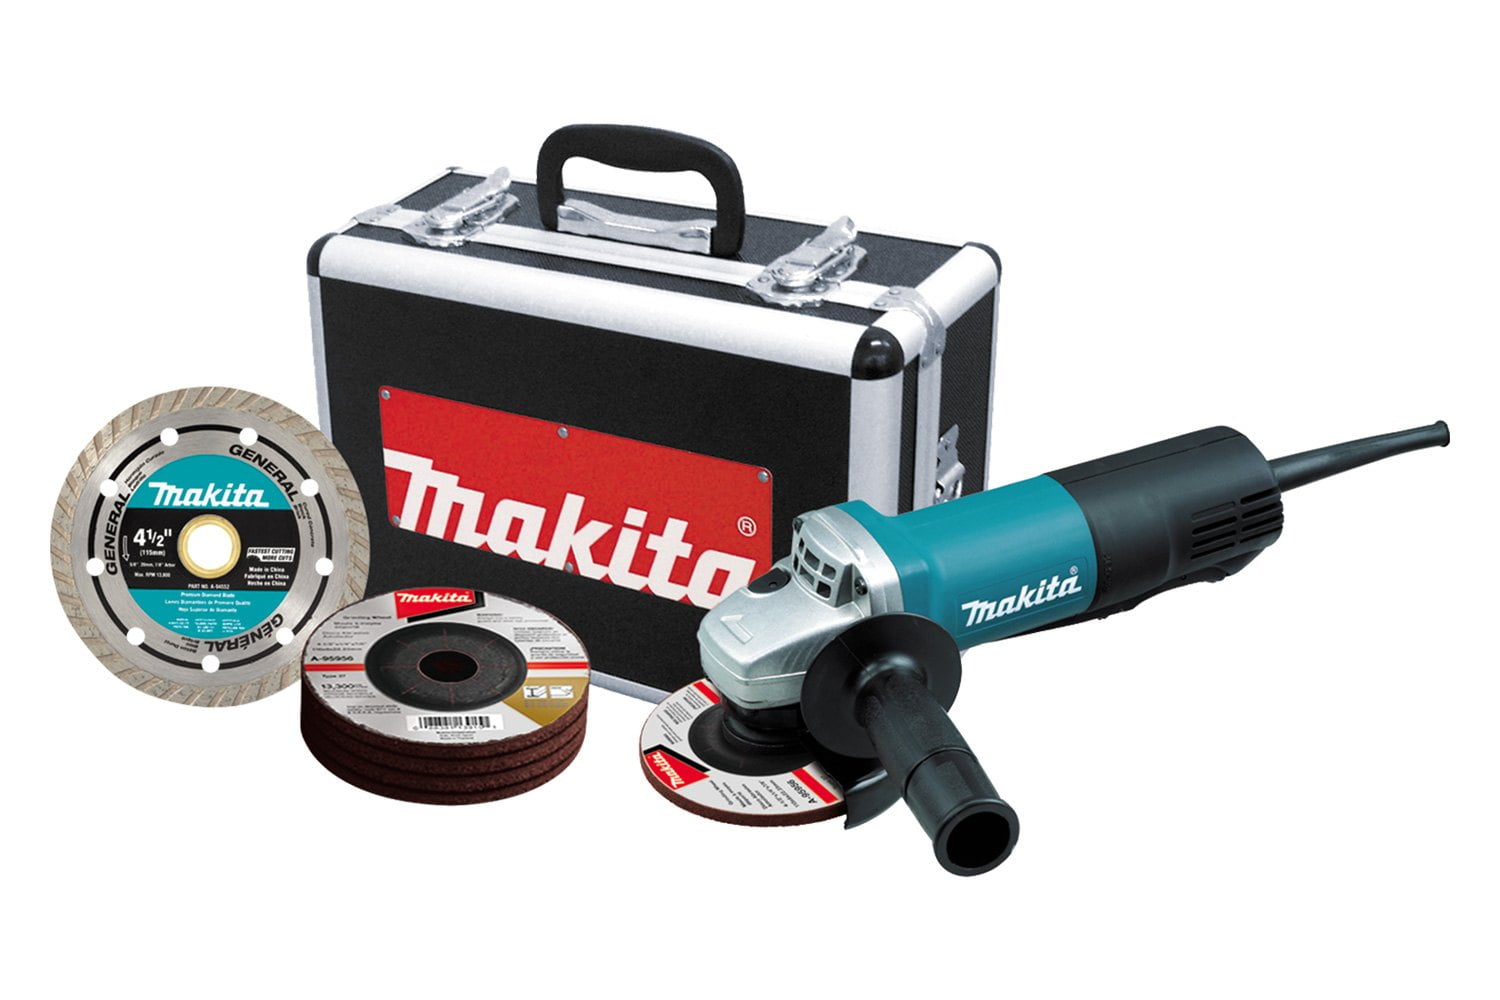 Makita 9557PB 120V 114mm Angle Grinder for sale online 